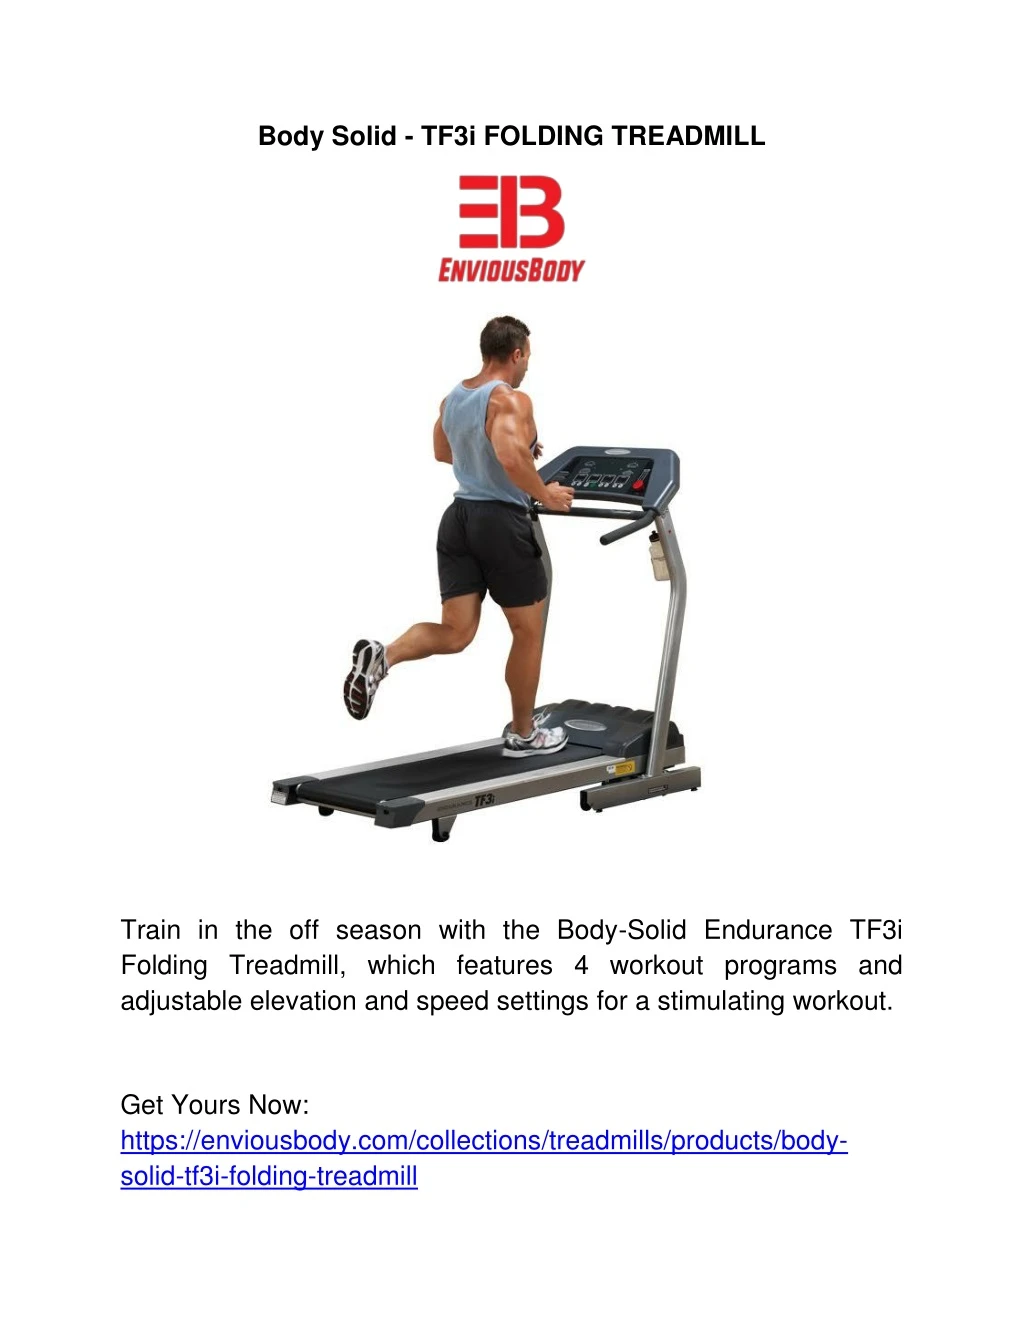 body solid tf3i folding treadmill